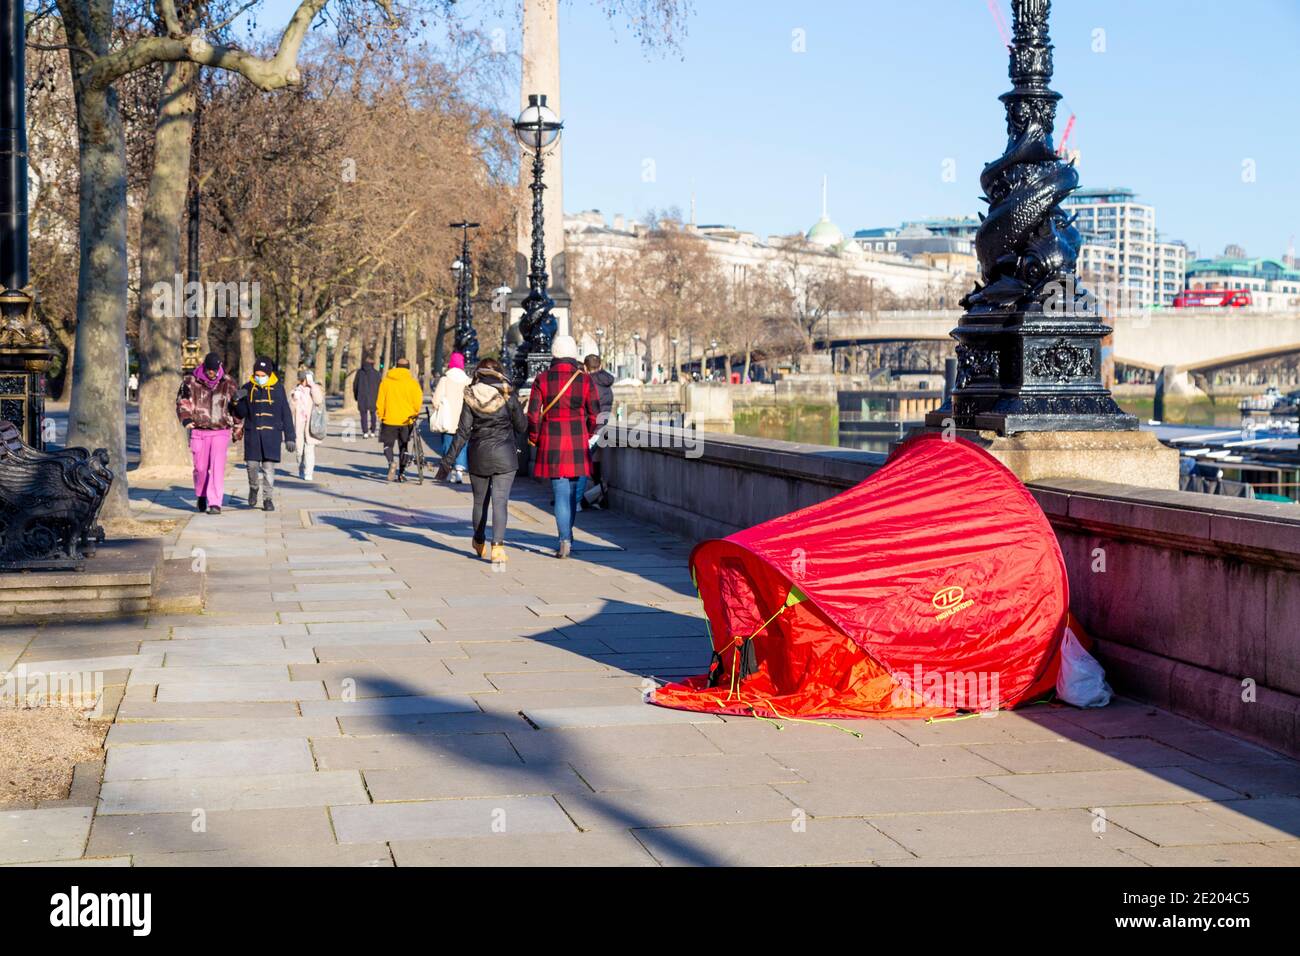 9 janvier 2021 - Londres, Royaume-Uni, tente d'un sans-abri sur le Victoria Embankment et des gens dehors pour des promenades sur un week-end ensoleillé pendant le 3ème confinement pandémique du coronavirus Banque D'Images